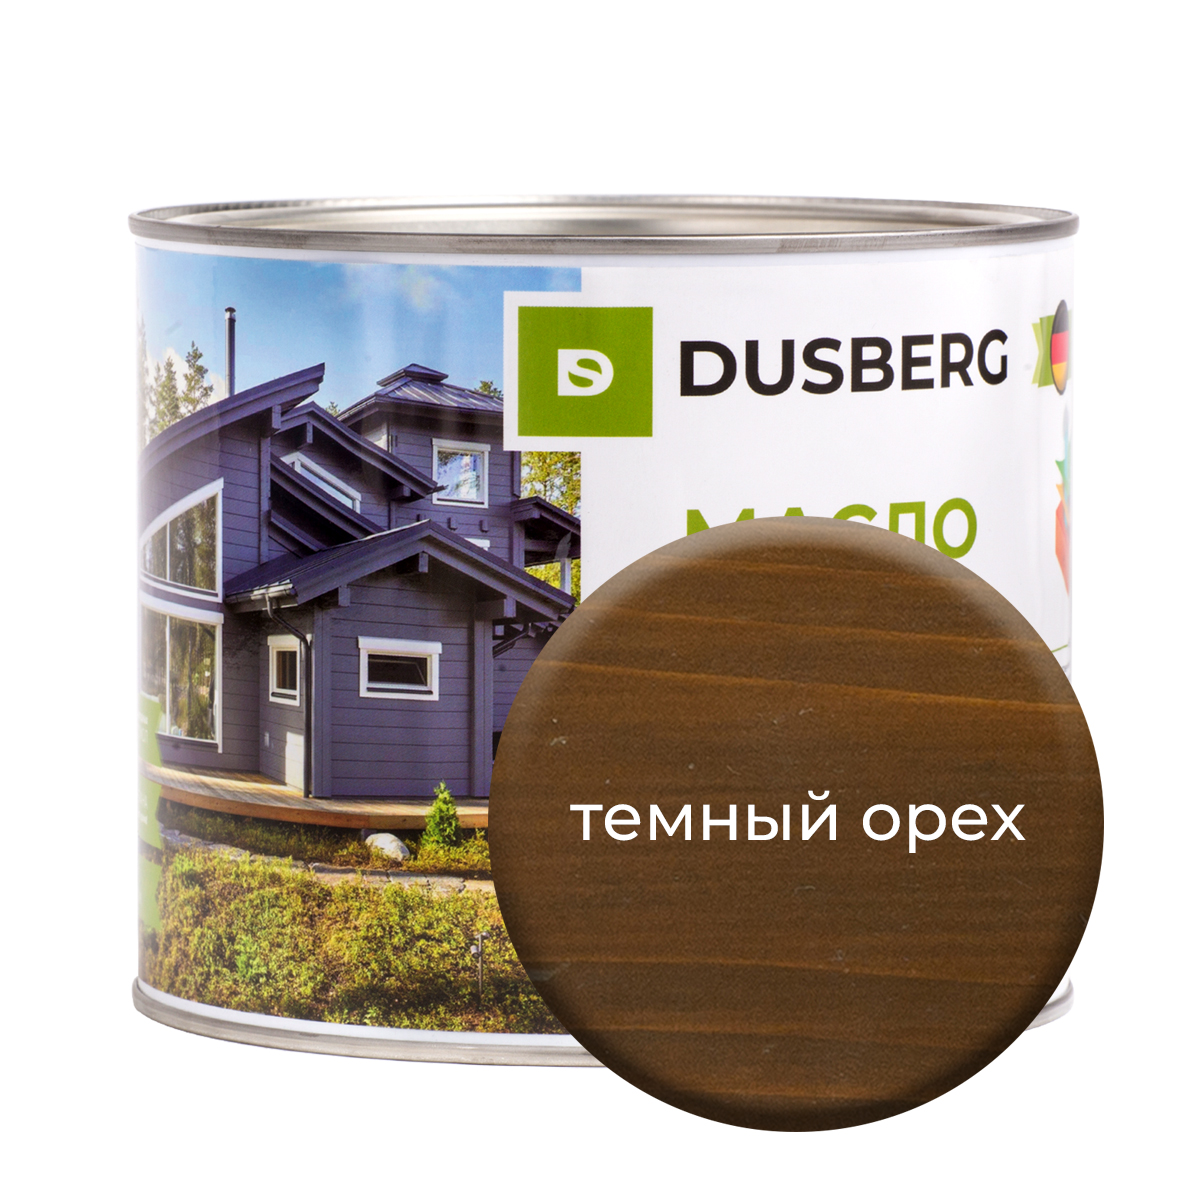 Масло Dusberg для дерева на бесцветной основе, 2 л Темный орех краска dusberg для дерева бесцветная база 10 л темный желто коричневый